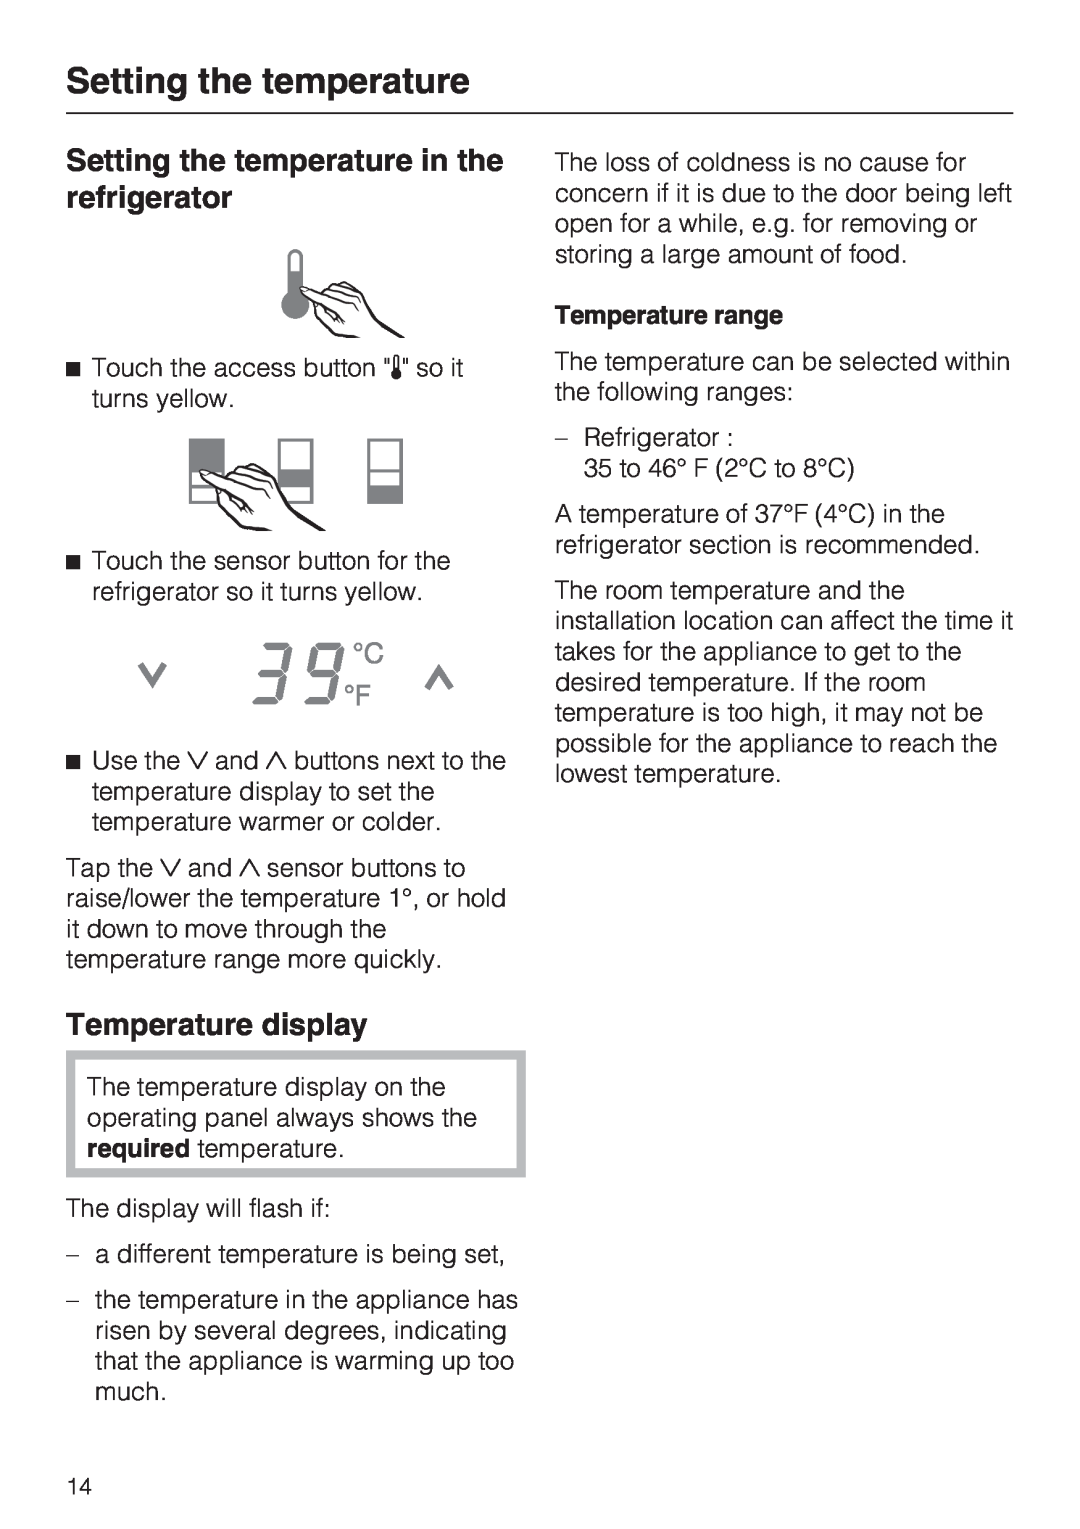 Miele K 1801 Vi, K 1911 Vi, K 1901 Vi, K 1811 Vi Setting the temperature in the refrigerator, Temperature display 